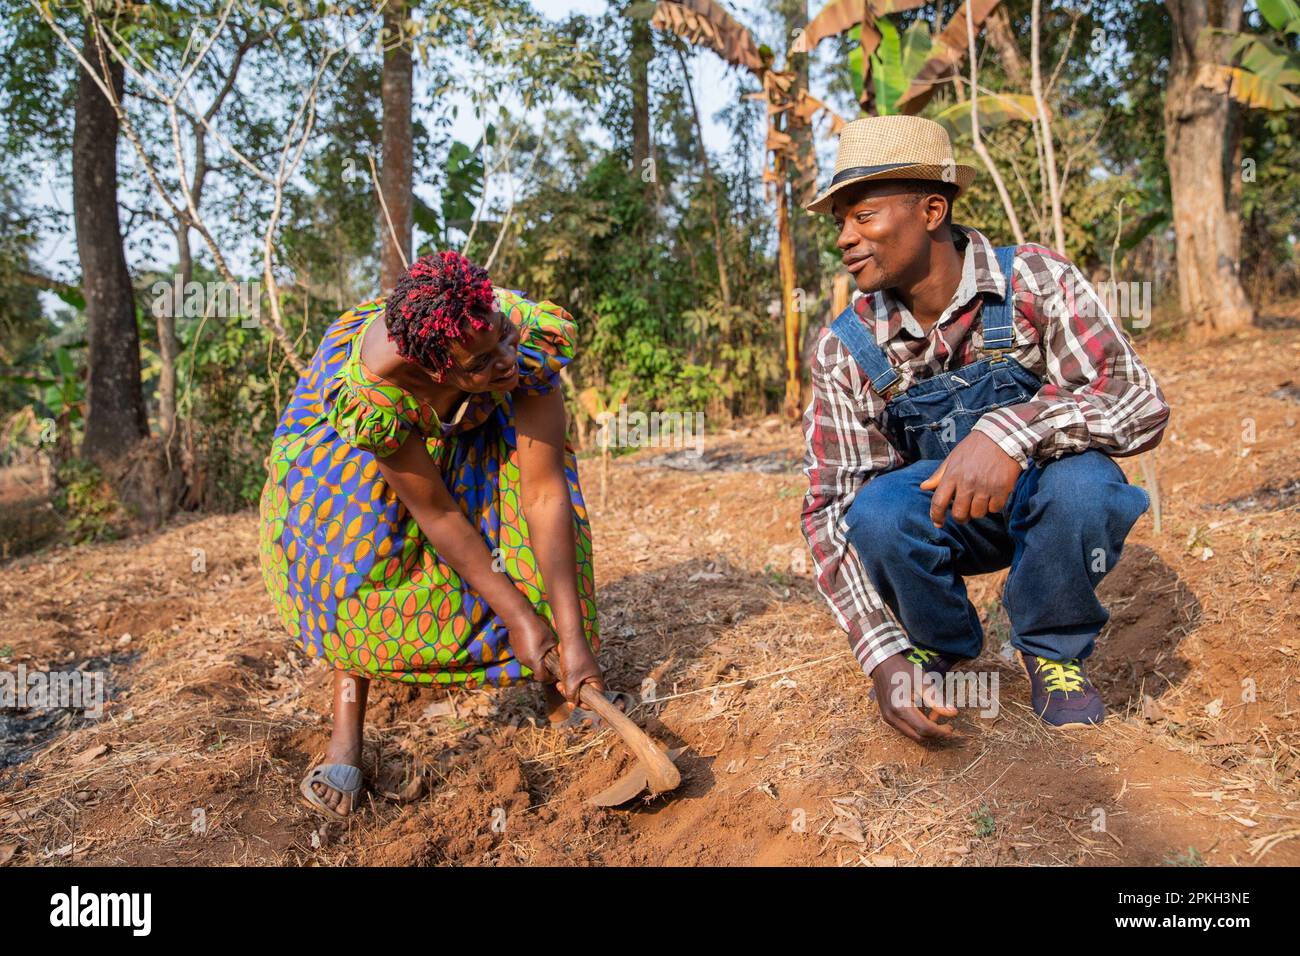 Zwei afrikanische Bauern hacken die Felder und unterhalten sich über die Landwirtschaft in Afrika. Stockfoto